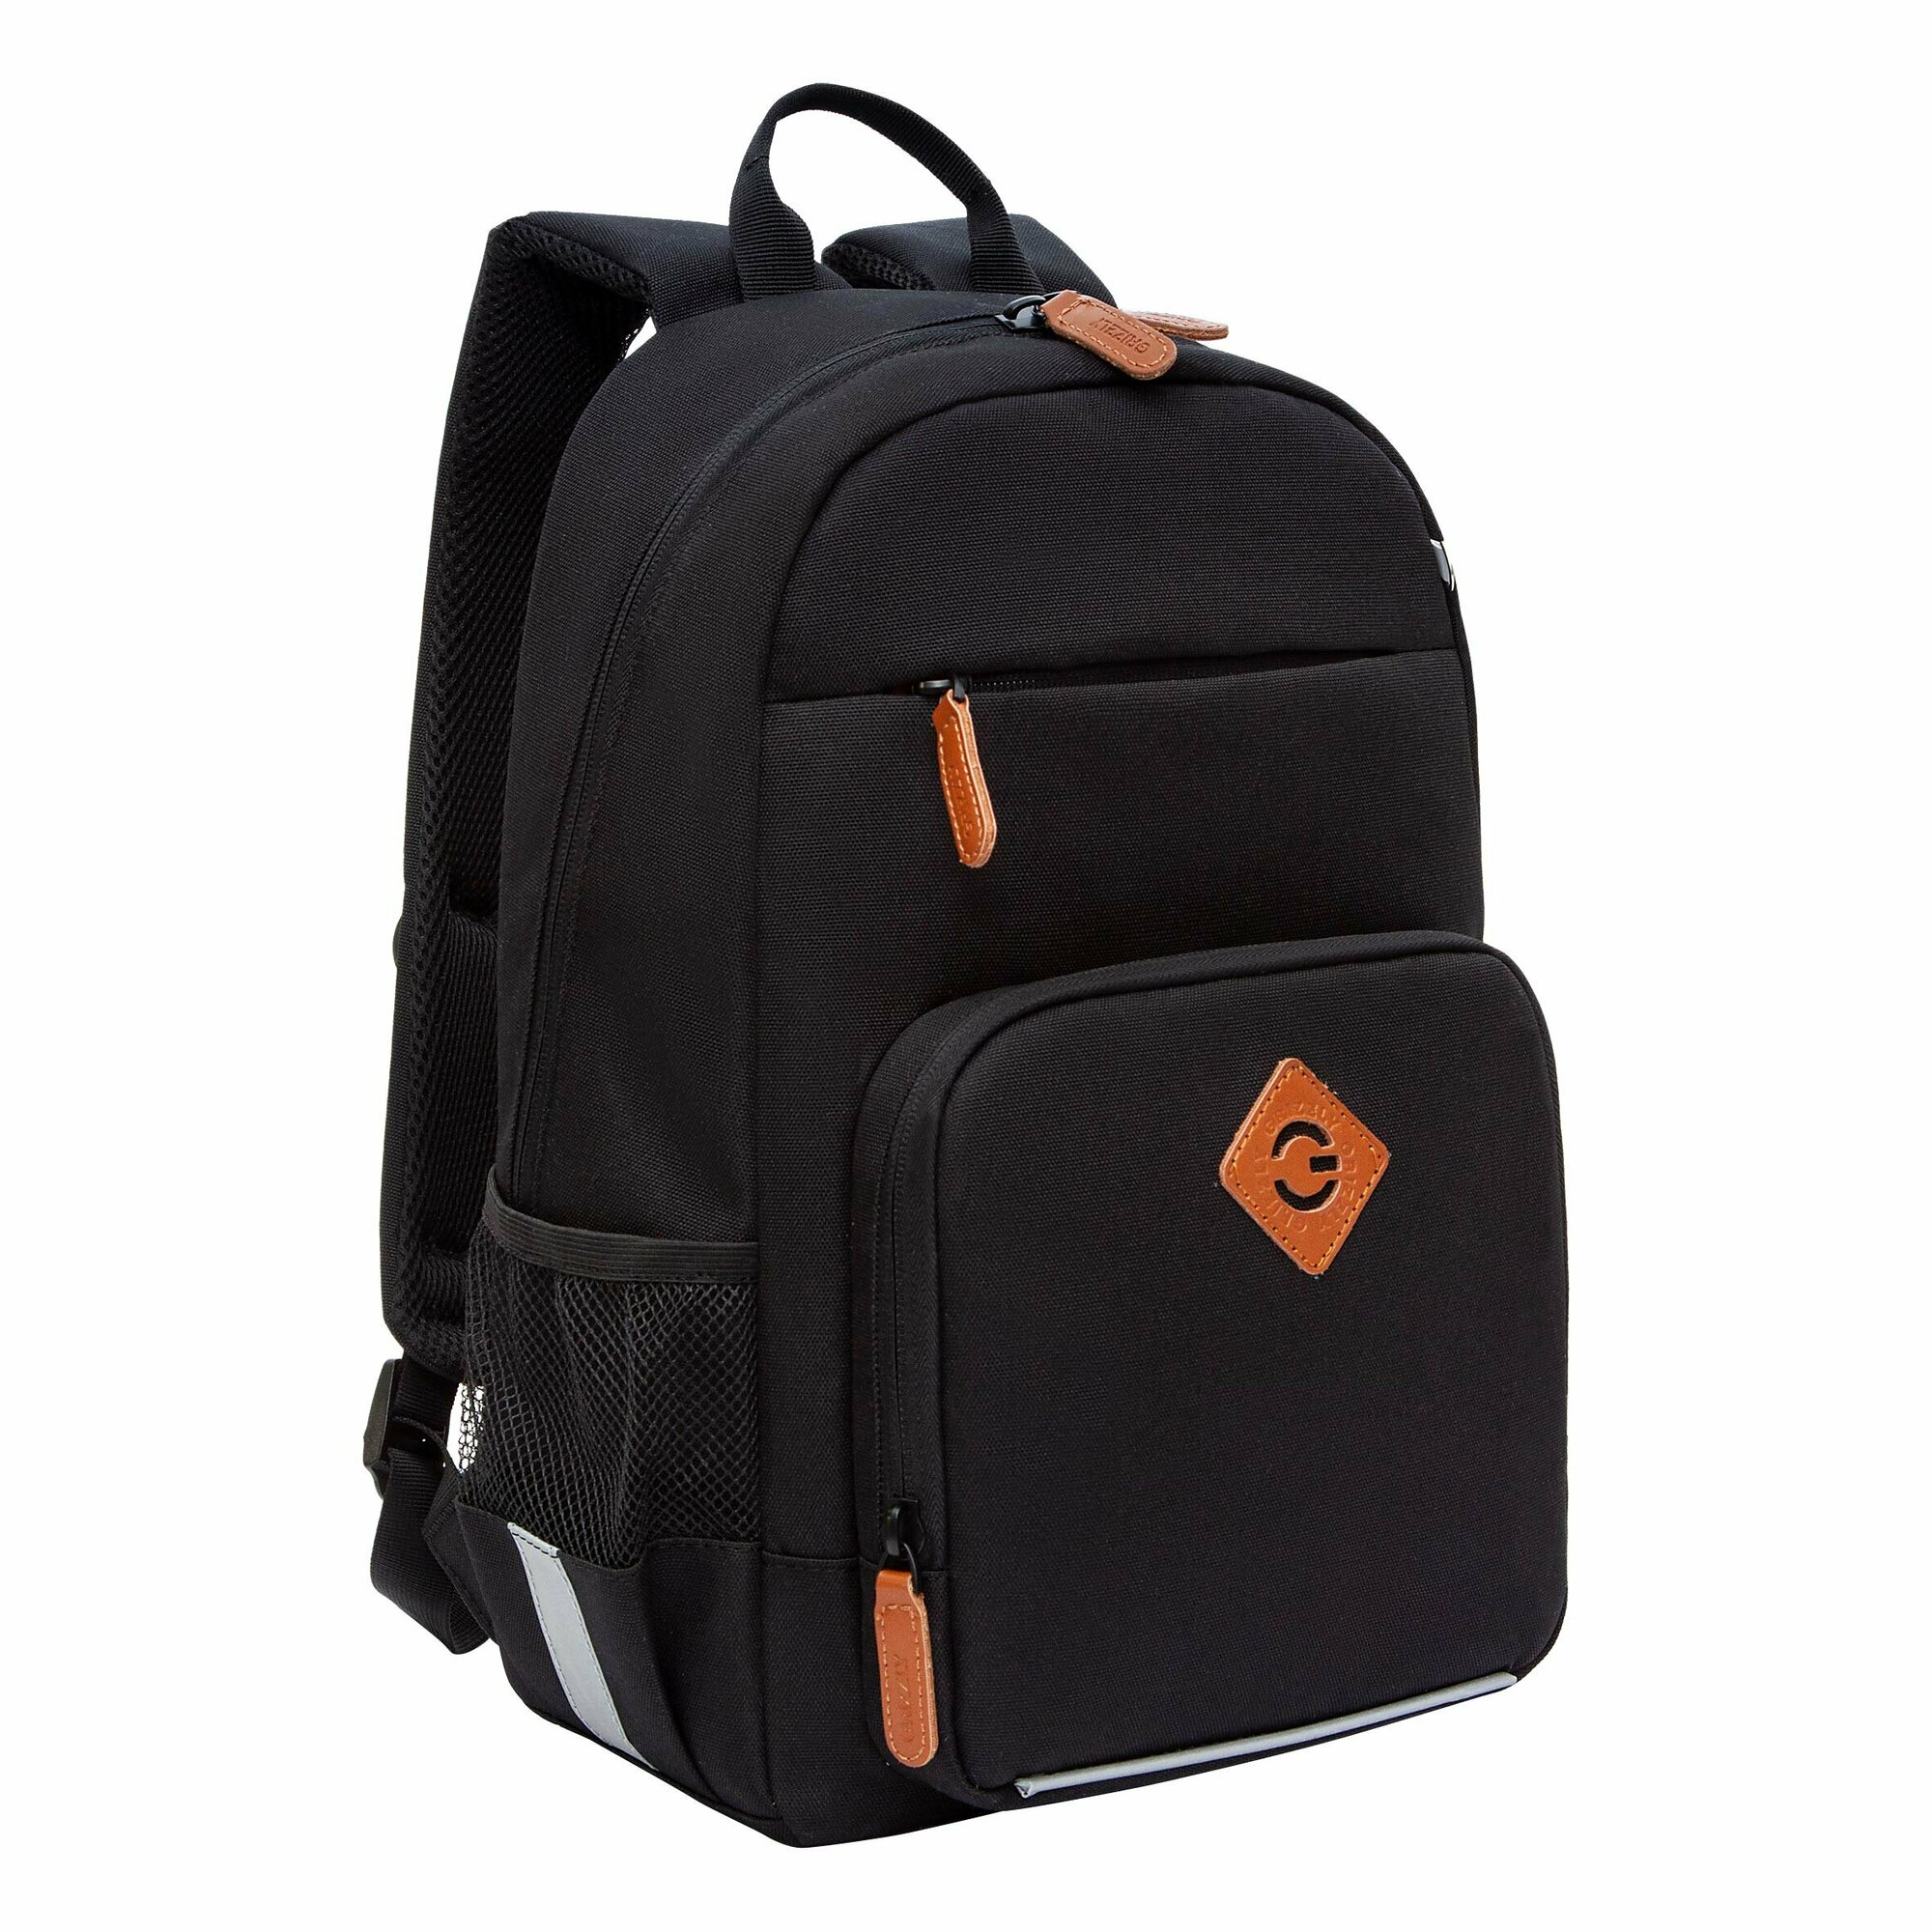 Рюкзак школьный GRIZZLY с карманом для ноутбука 13", анатомической спинкой, для мальчика RB-455-1/4